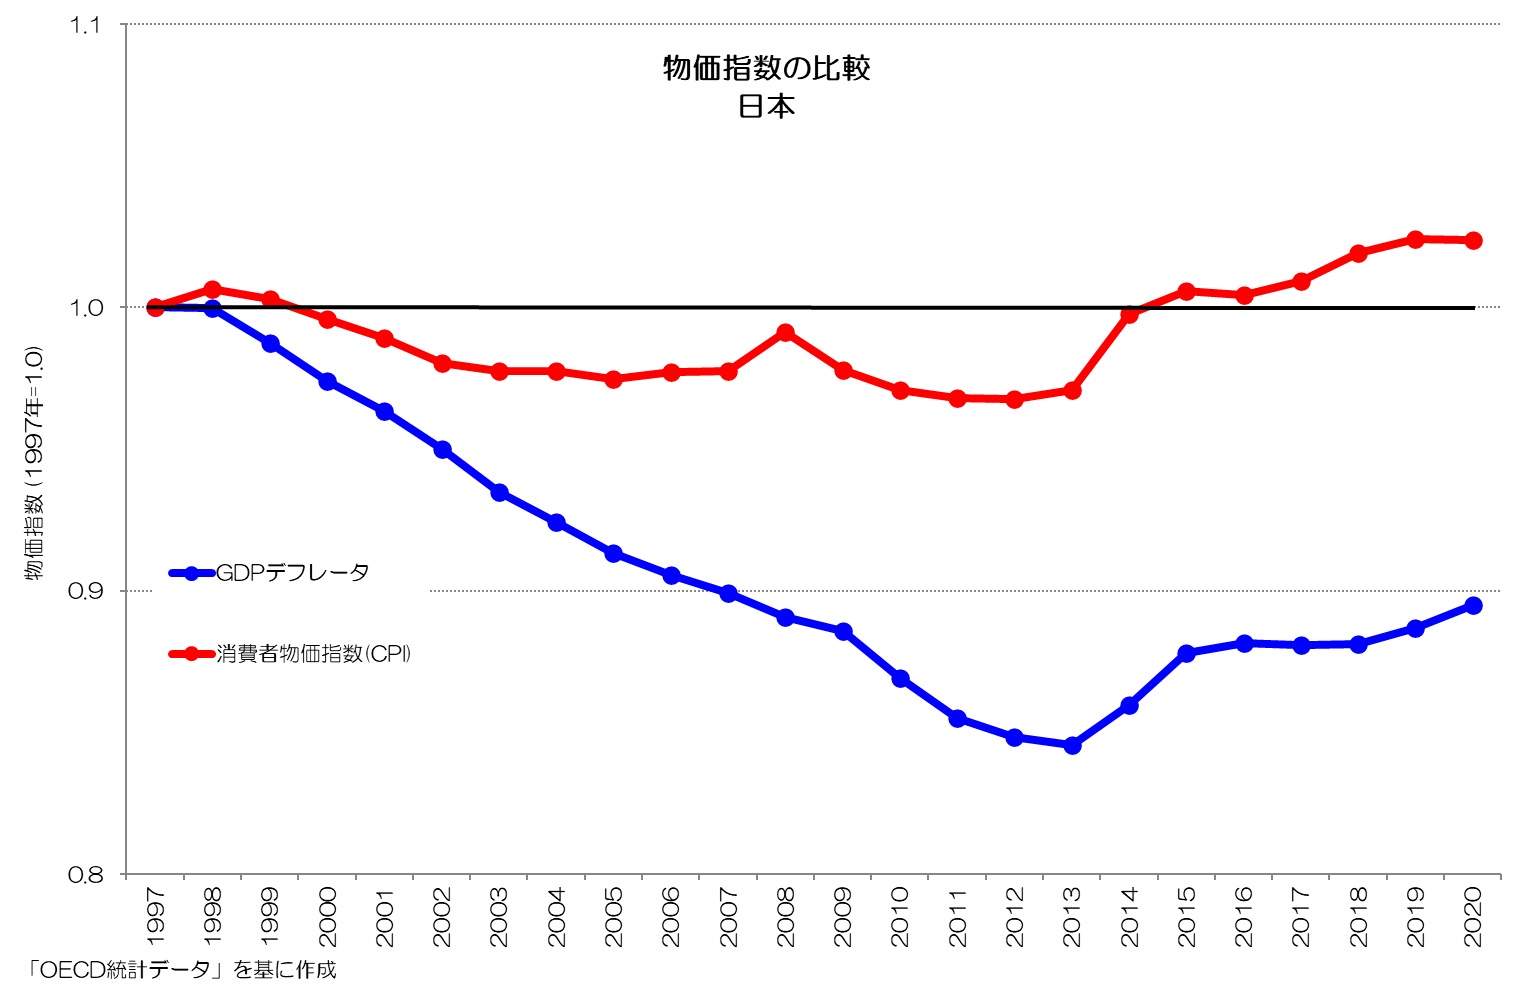 物価指数の比較 1997年基準 日本